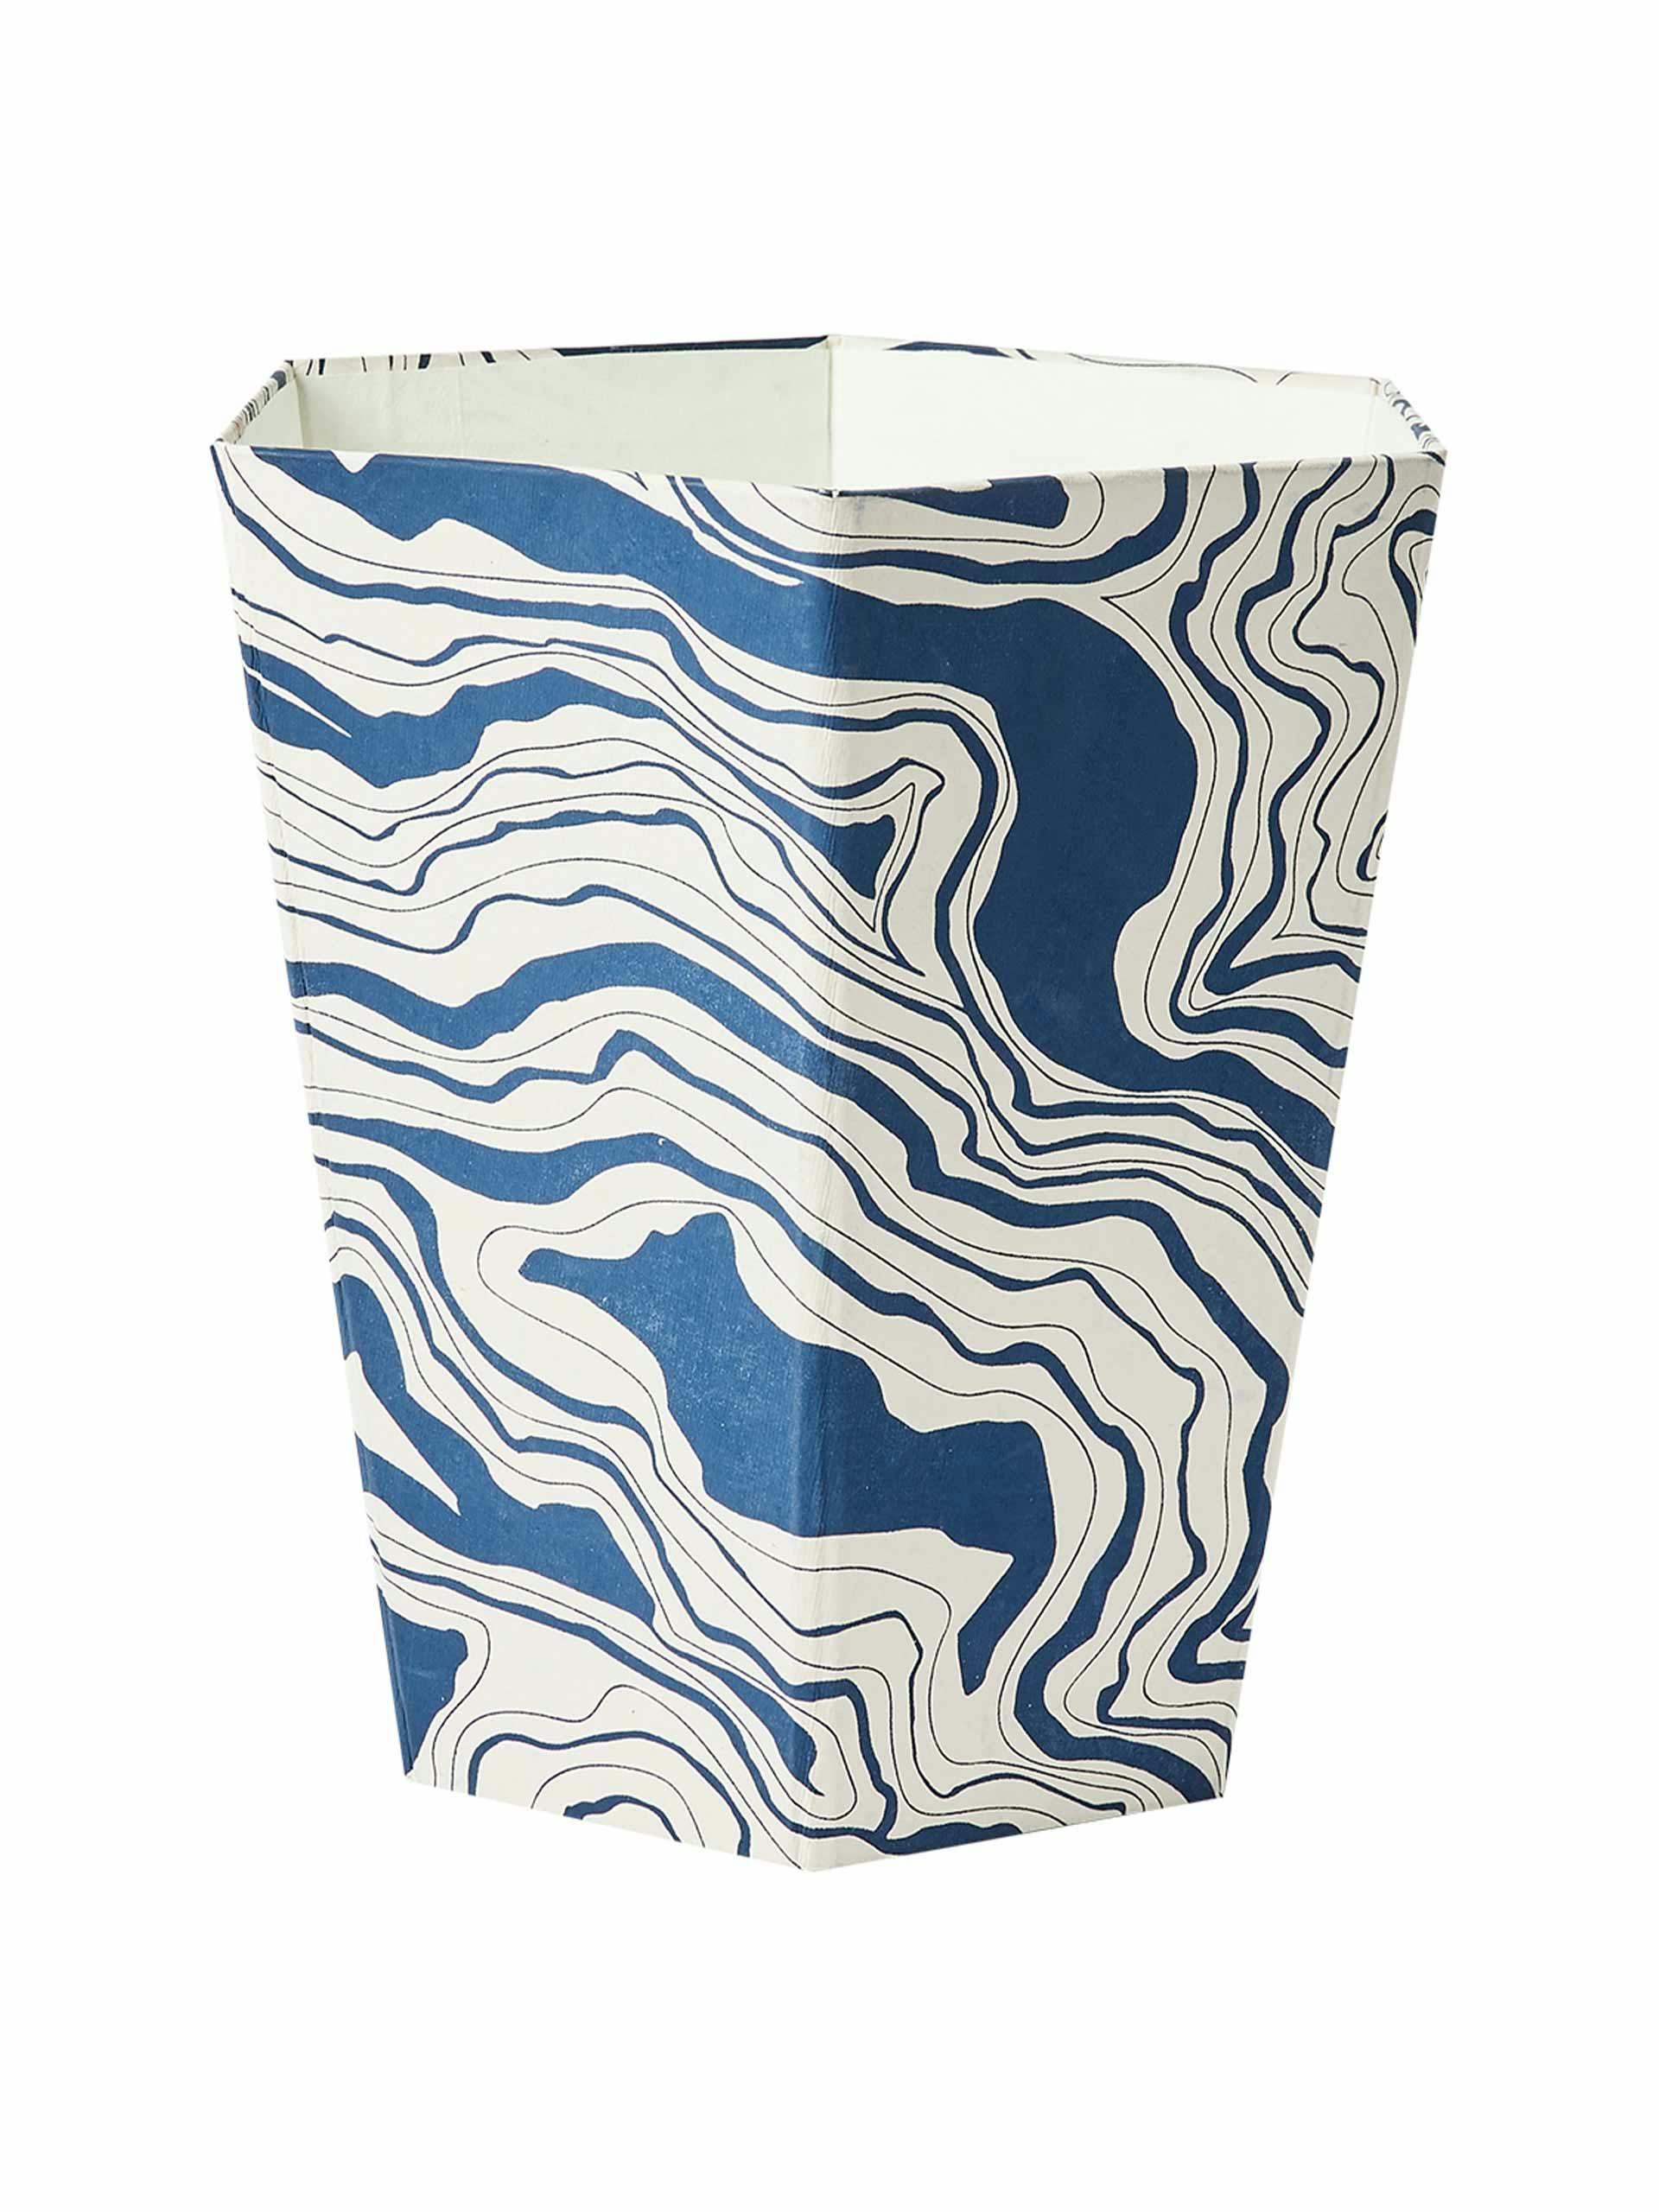 Marble blue paper bin